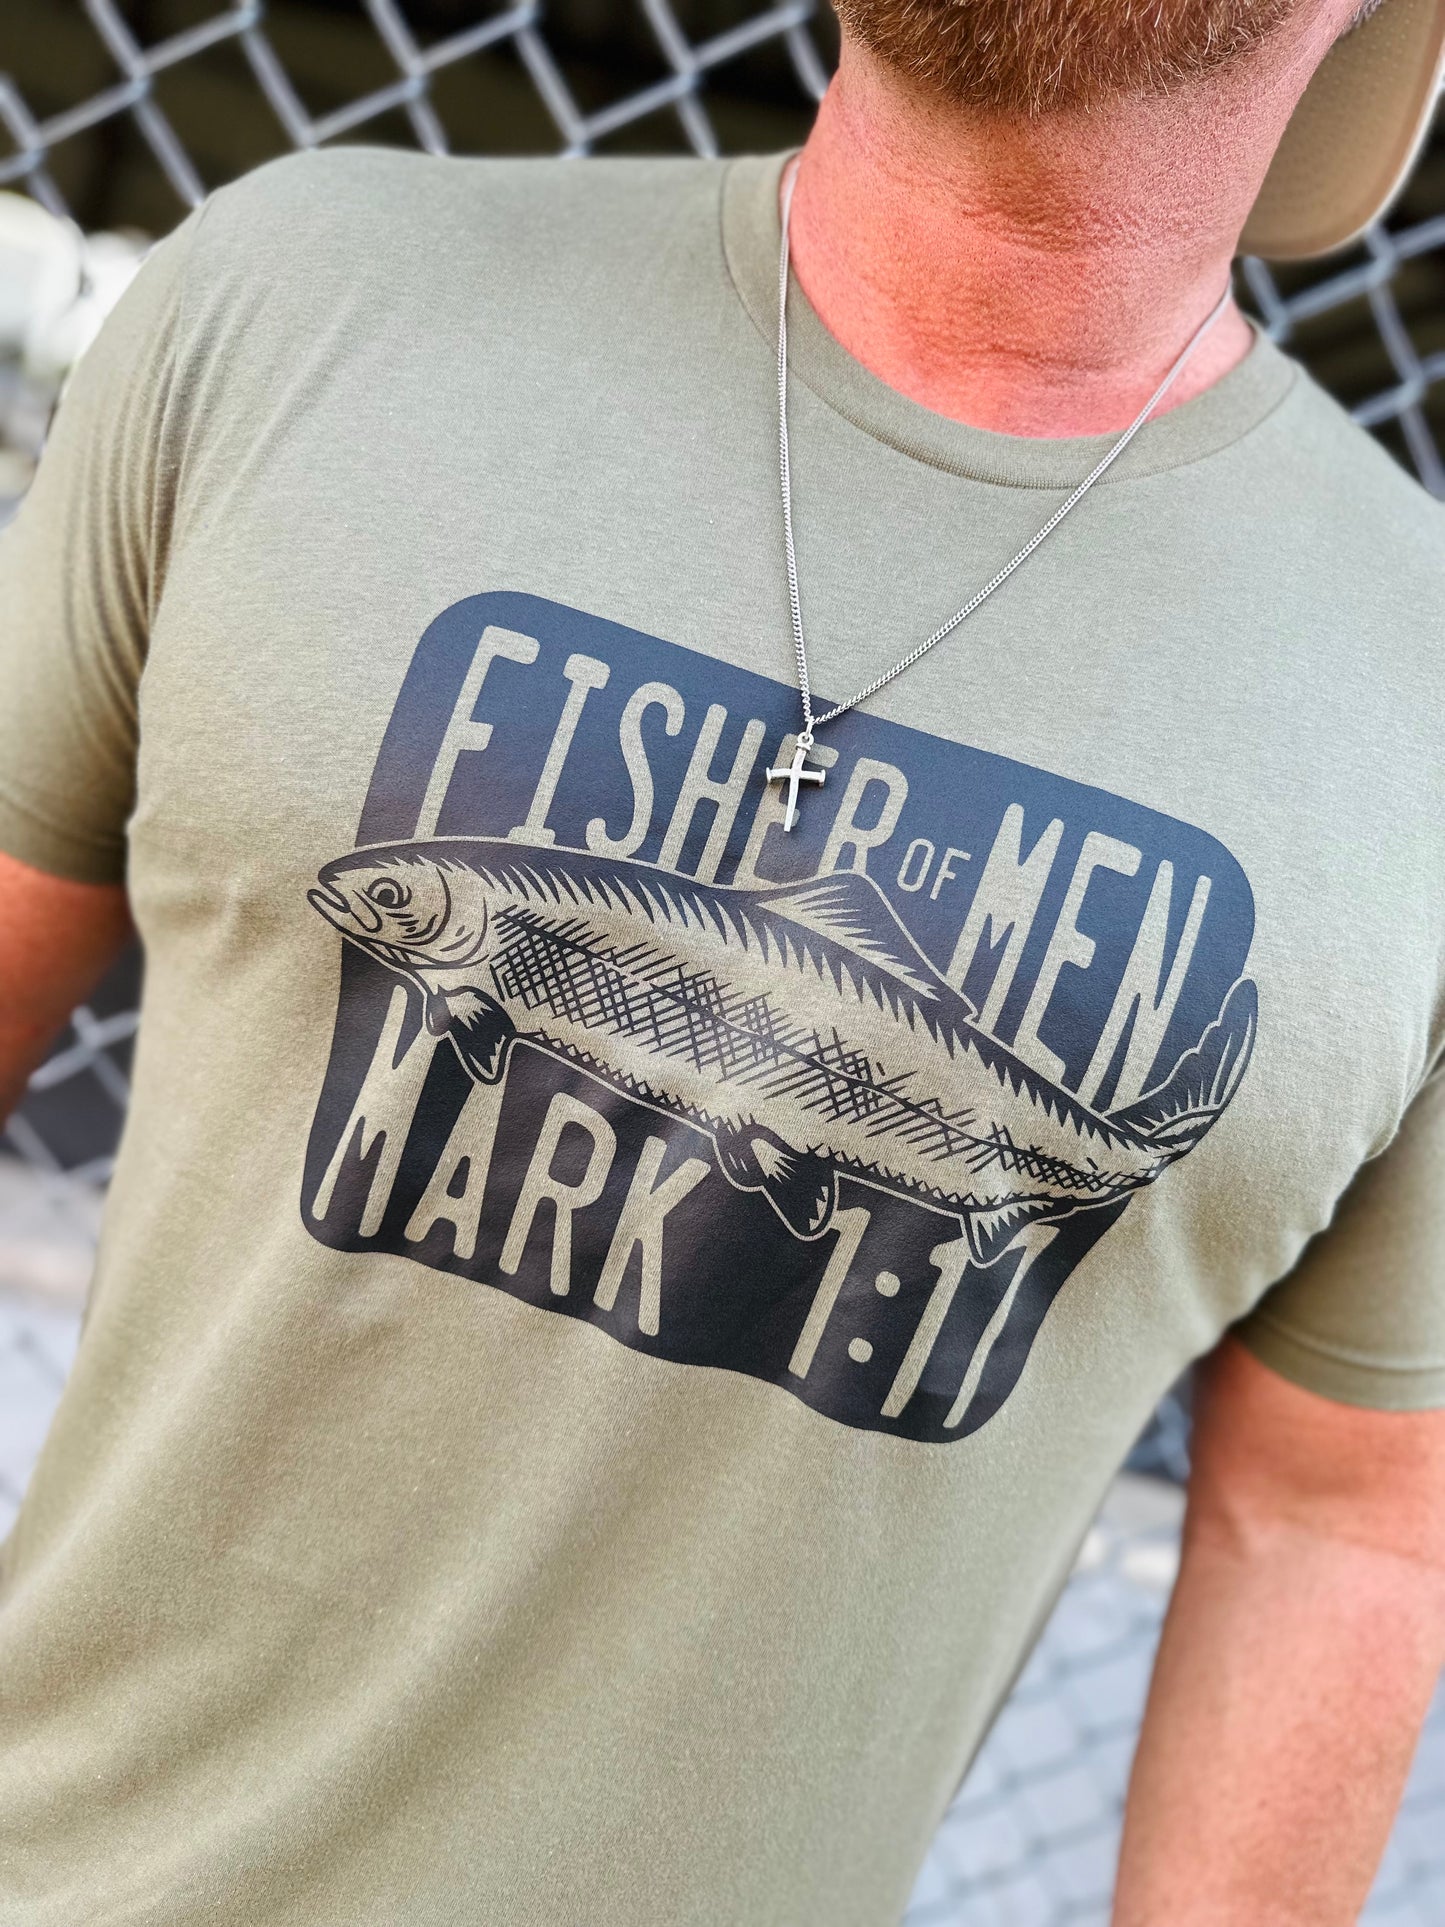 Fisher of men Mark 1:17